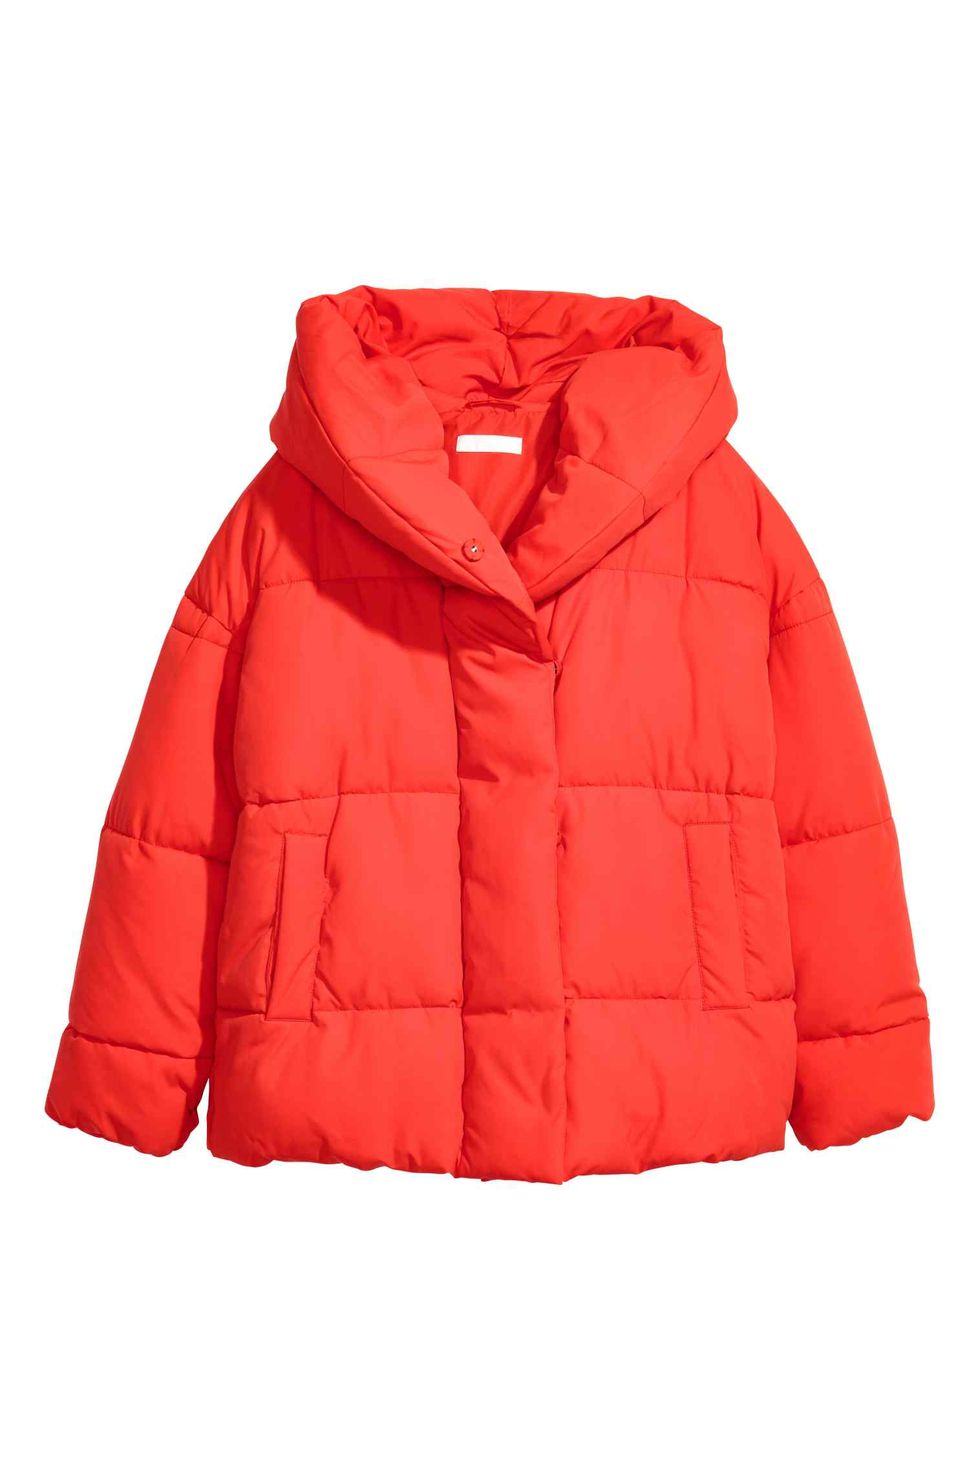 Clothing, Outerwear, Jacket, Hood, Red, Sleeve, Orange, Coat, Parka, 